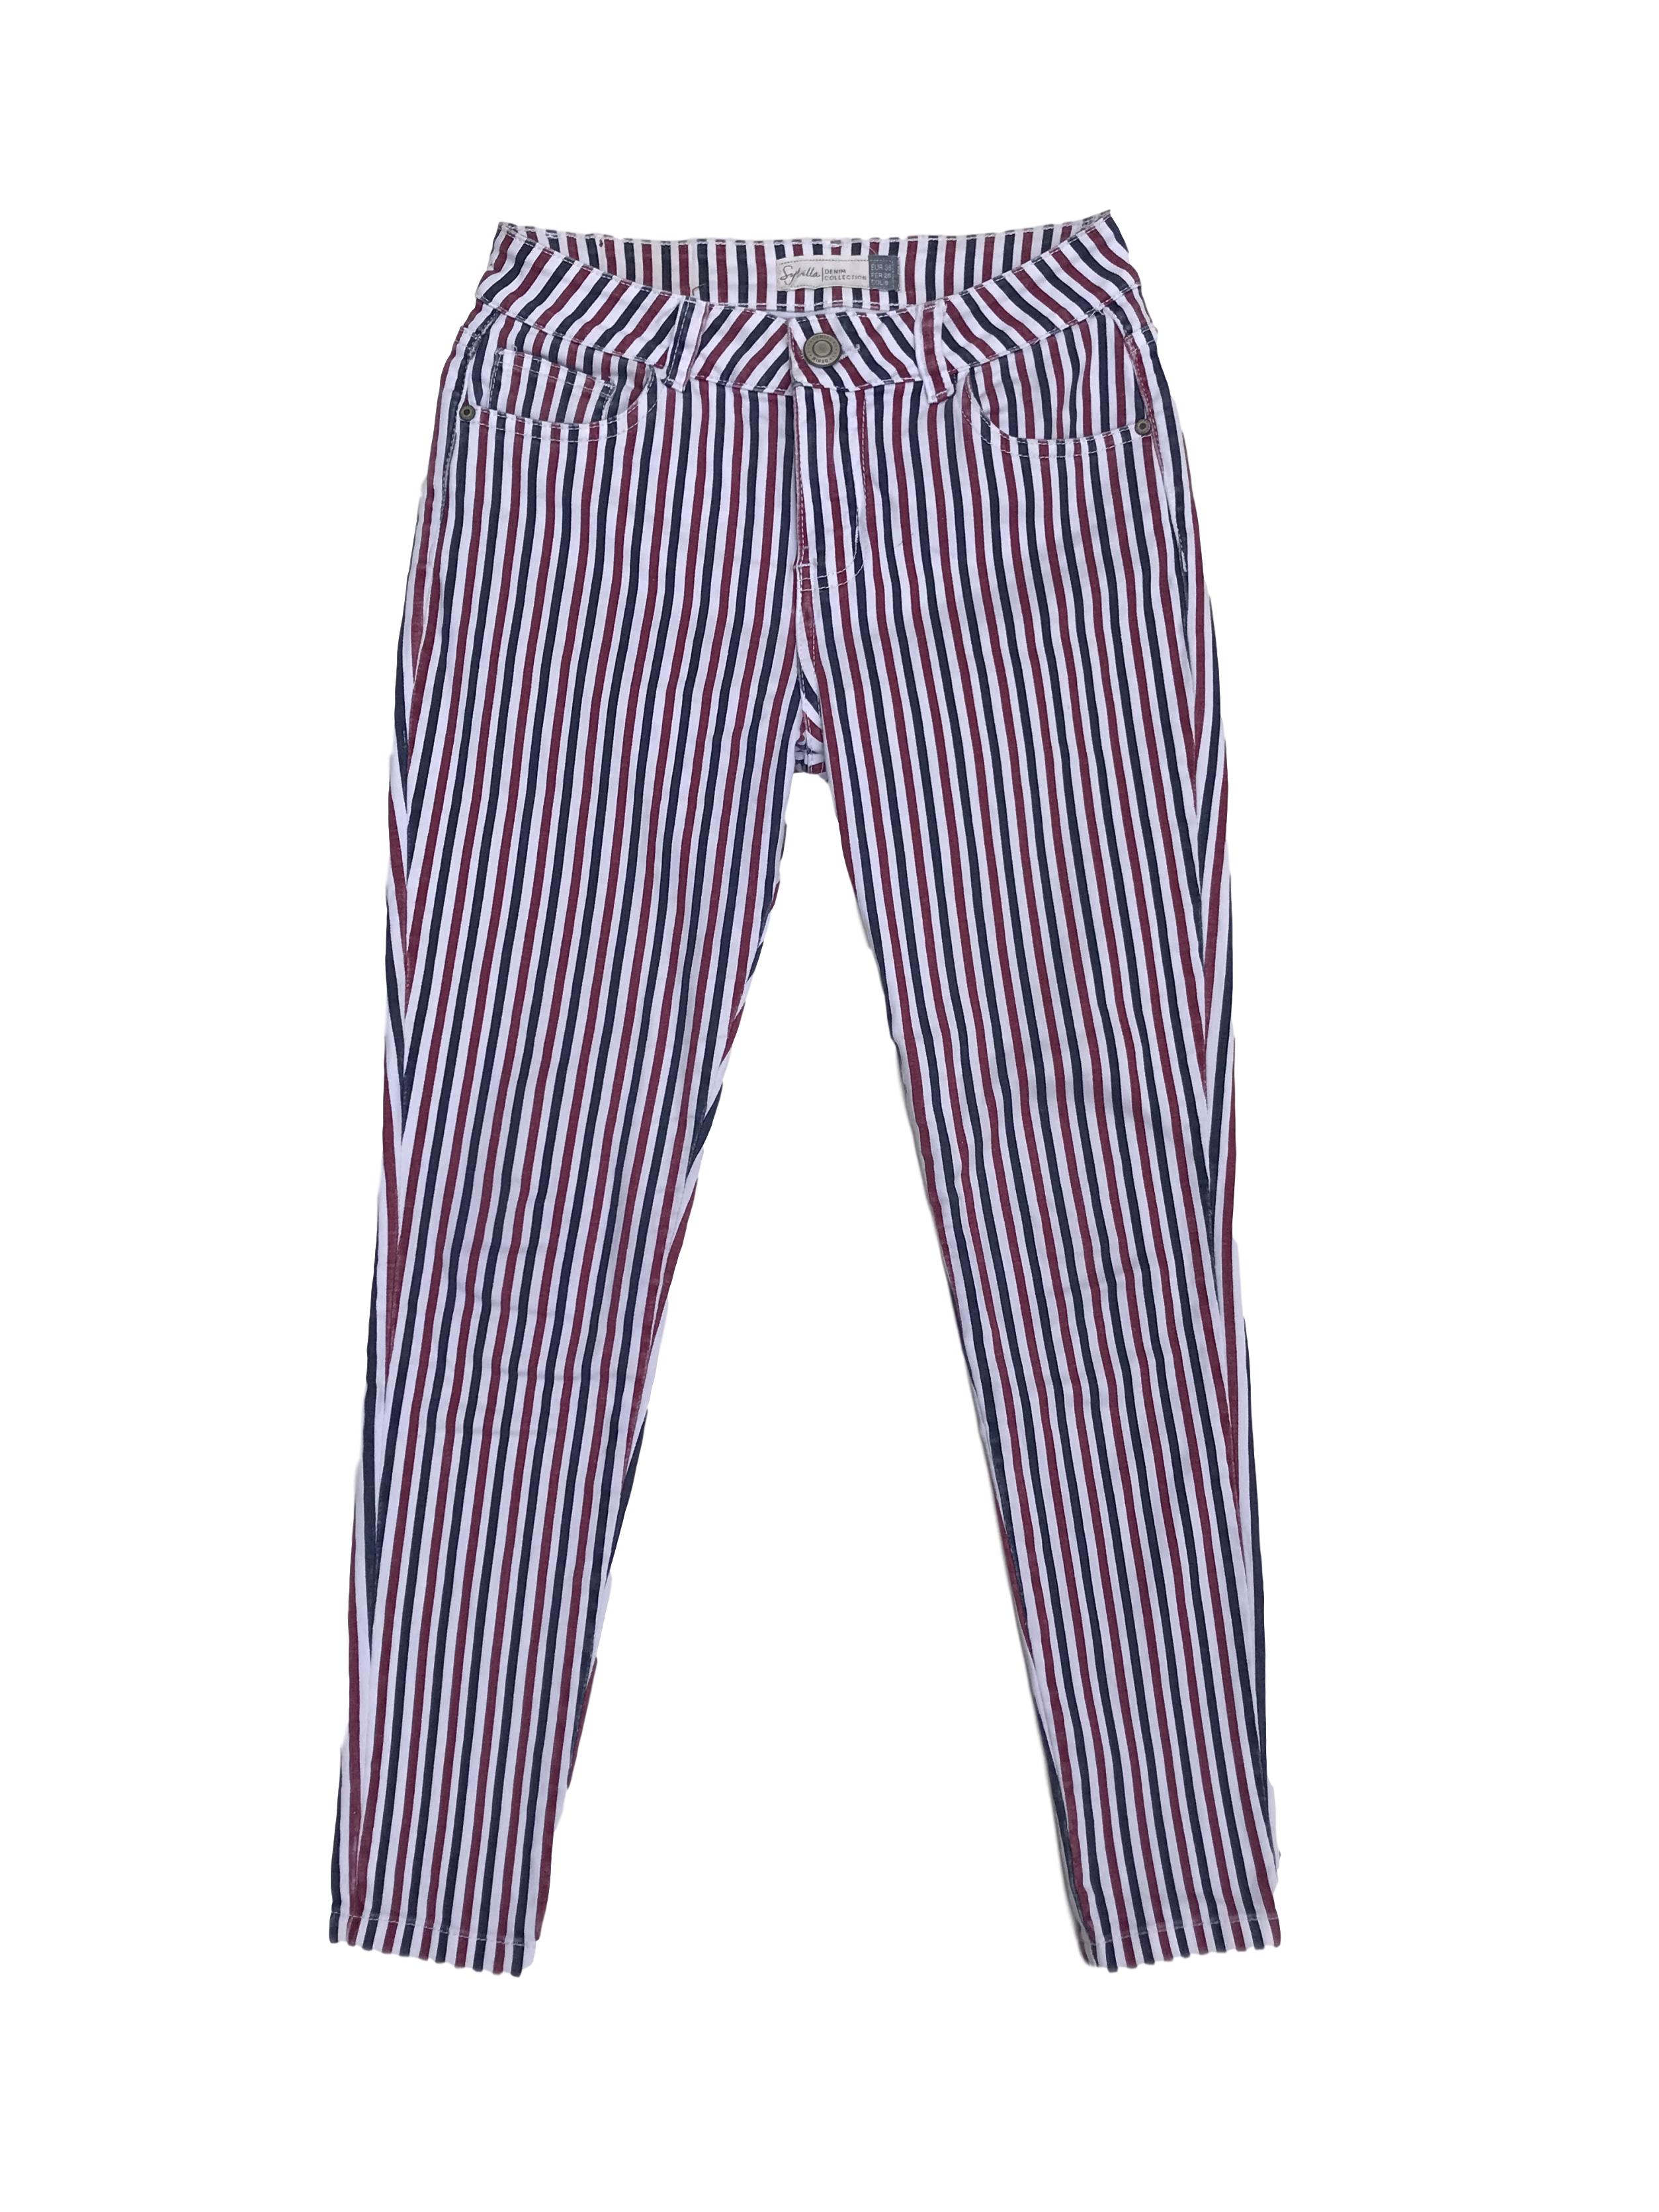 Pantalón Sybilla jean rayas blancas, rojas y azules, 98% algodón, five pockets, pitillo | Las Traperas